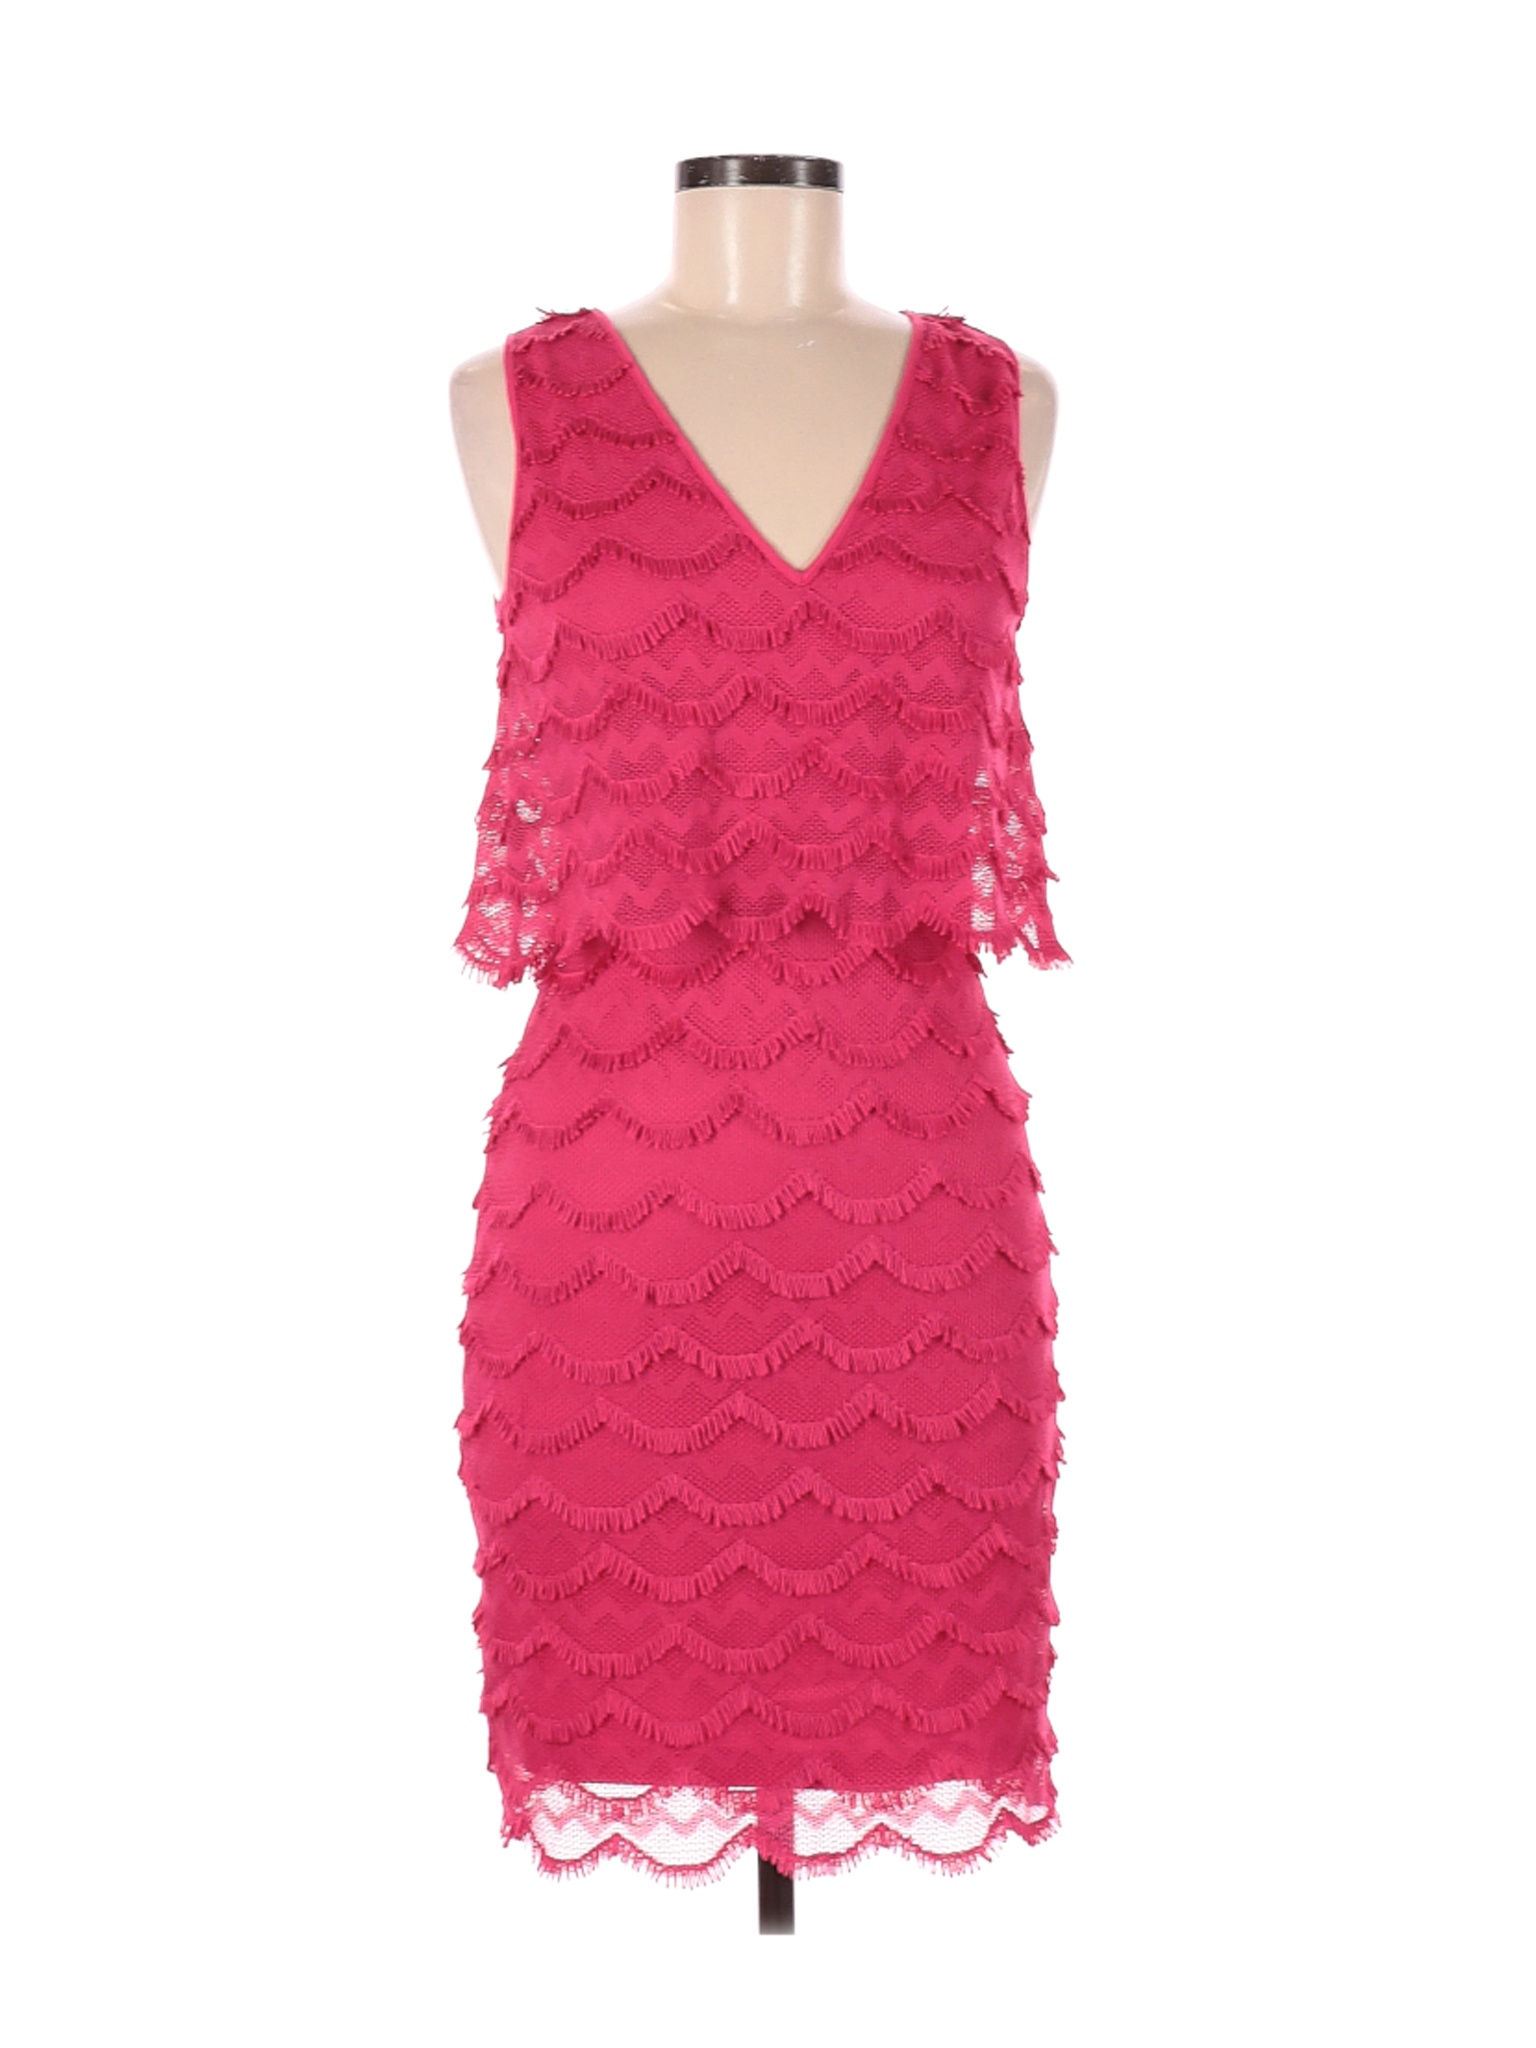 Guess Women Pink Cocktail Dress 6 | eBay